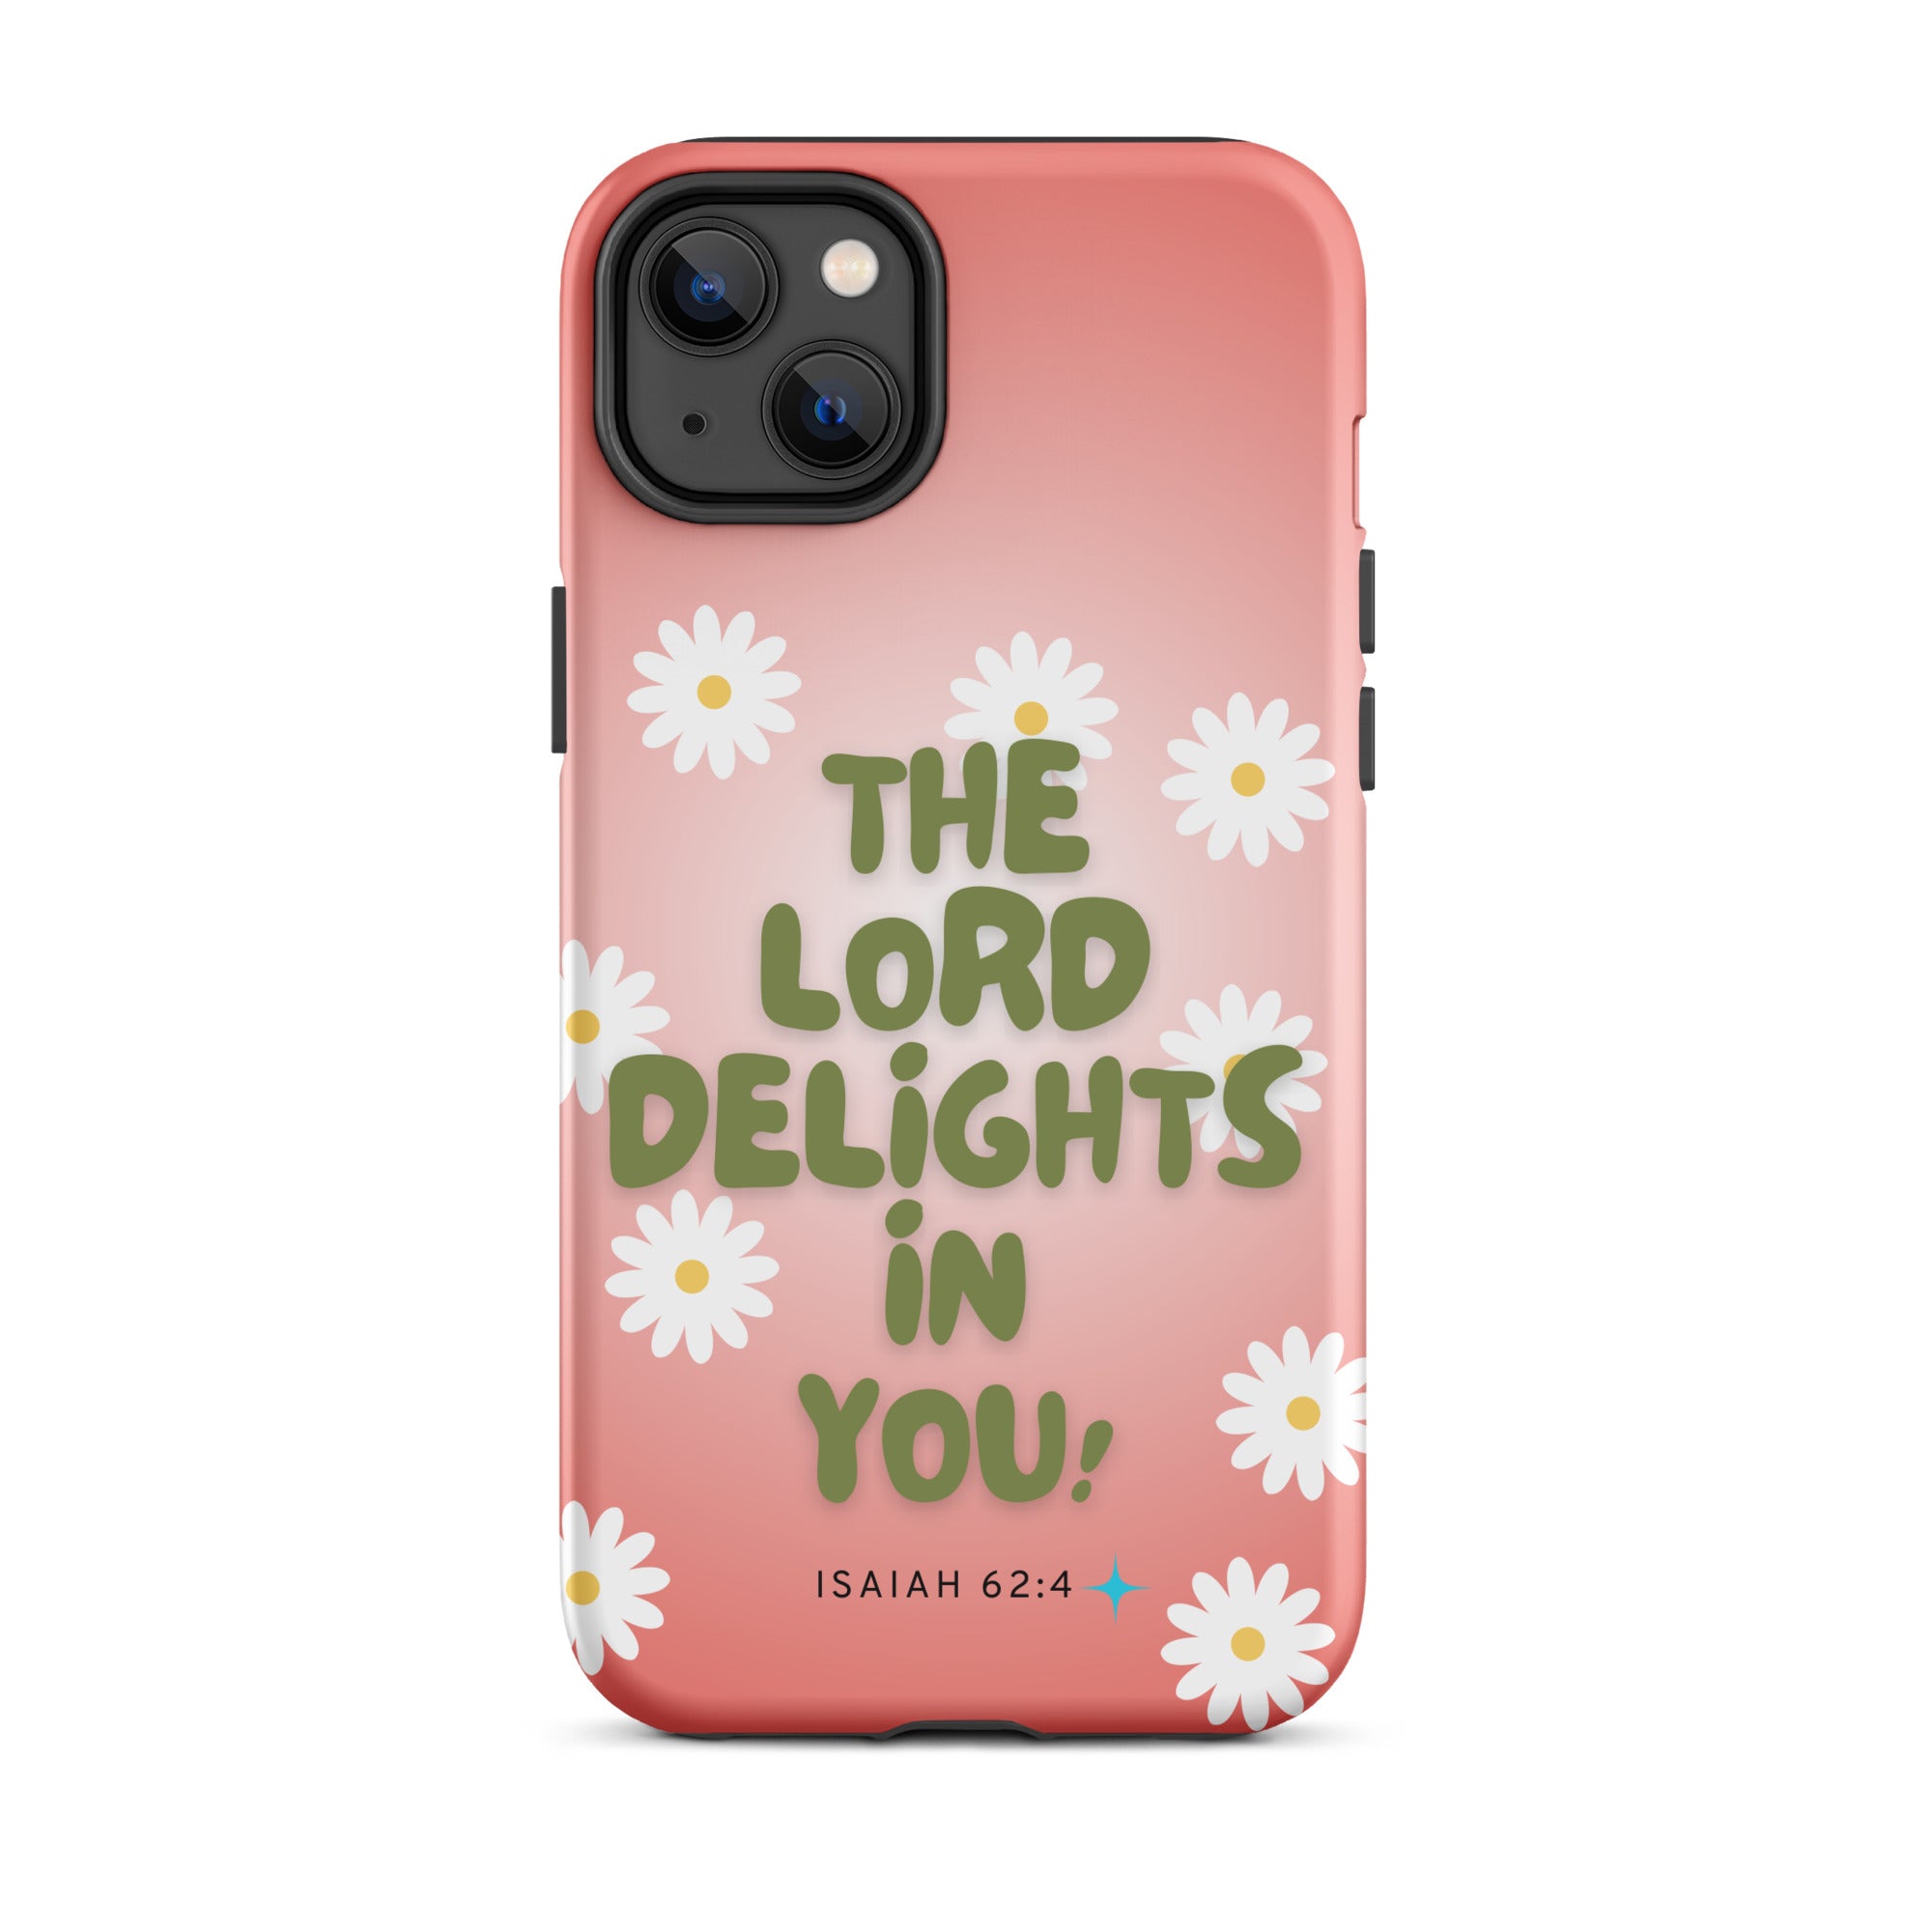 iPhone Case - Isaiah 62:4